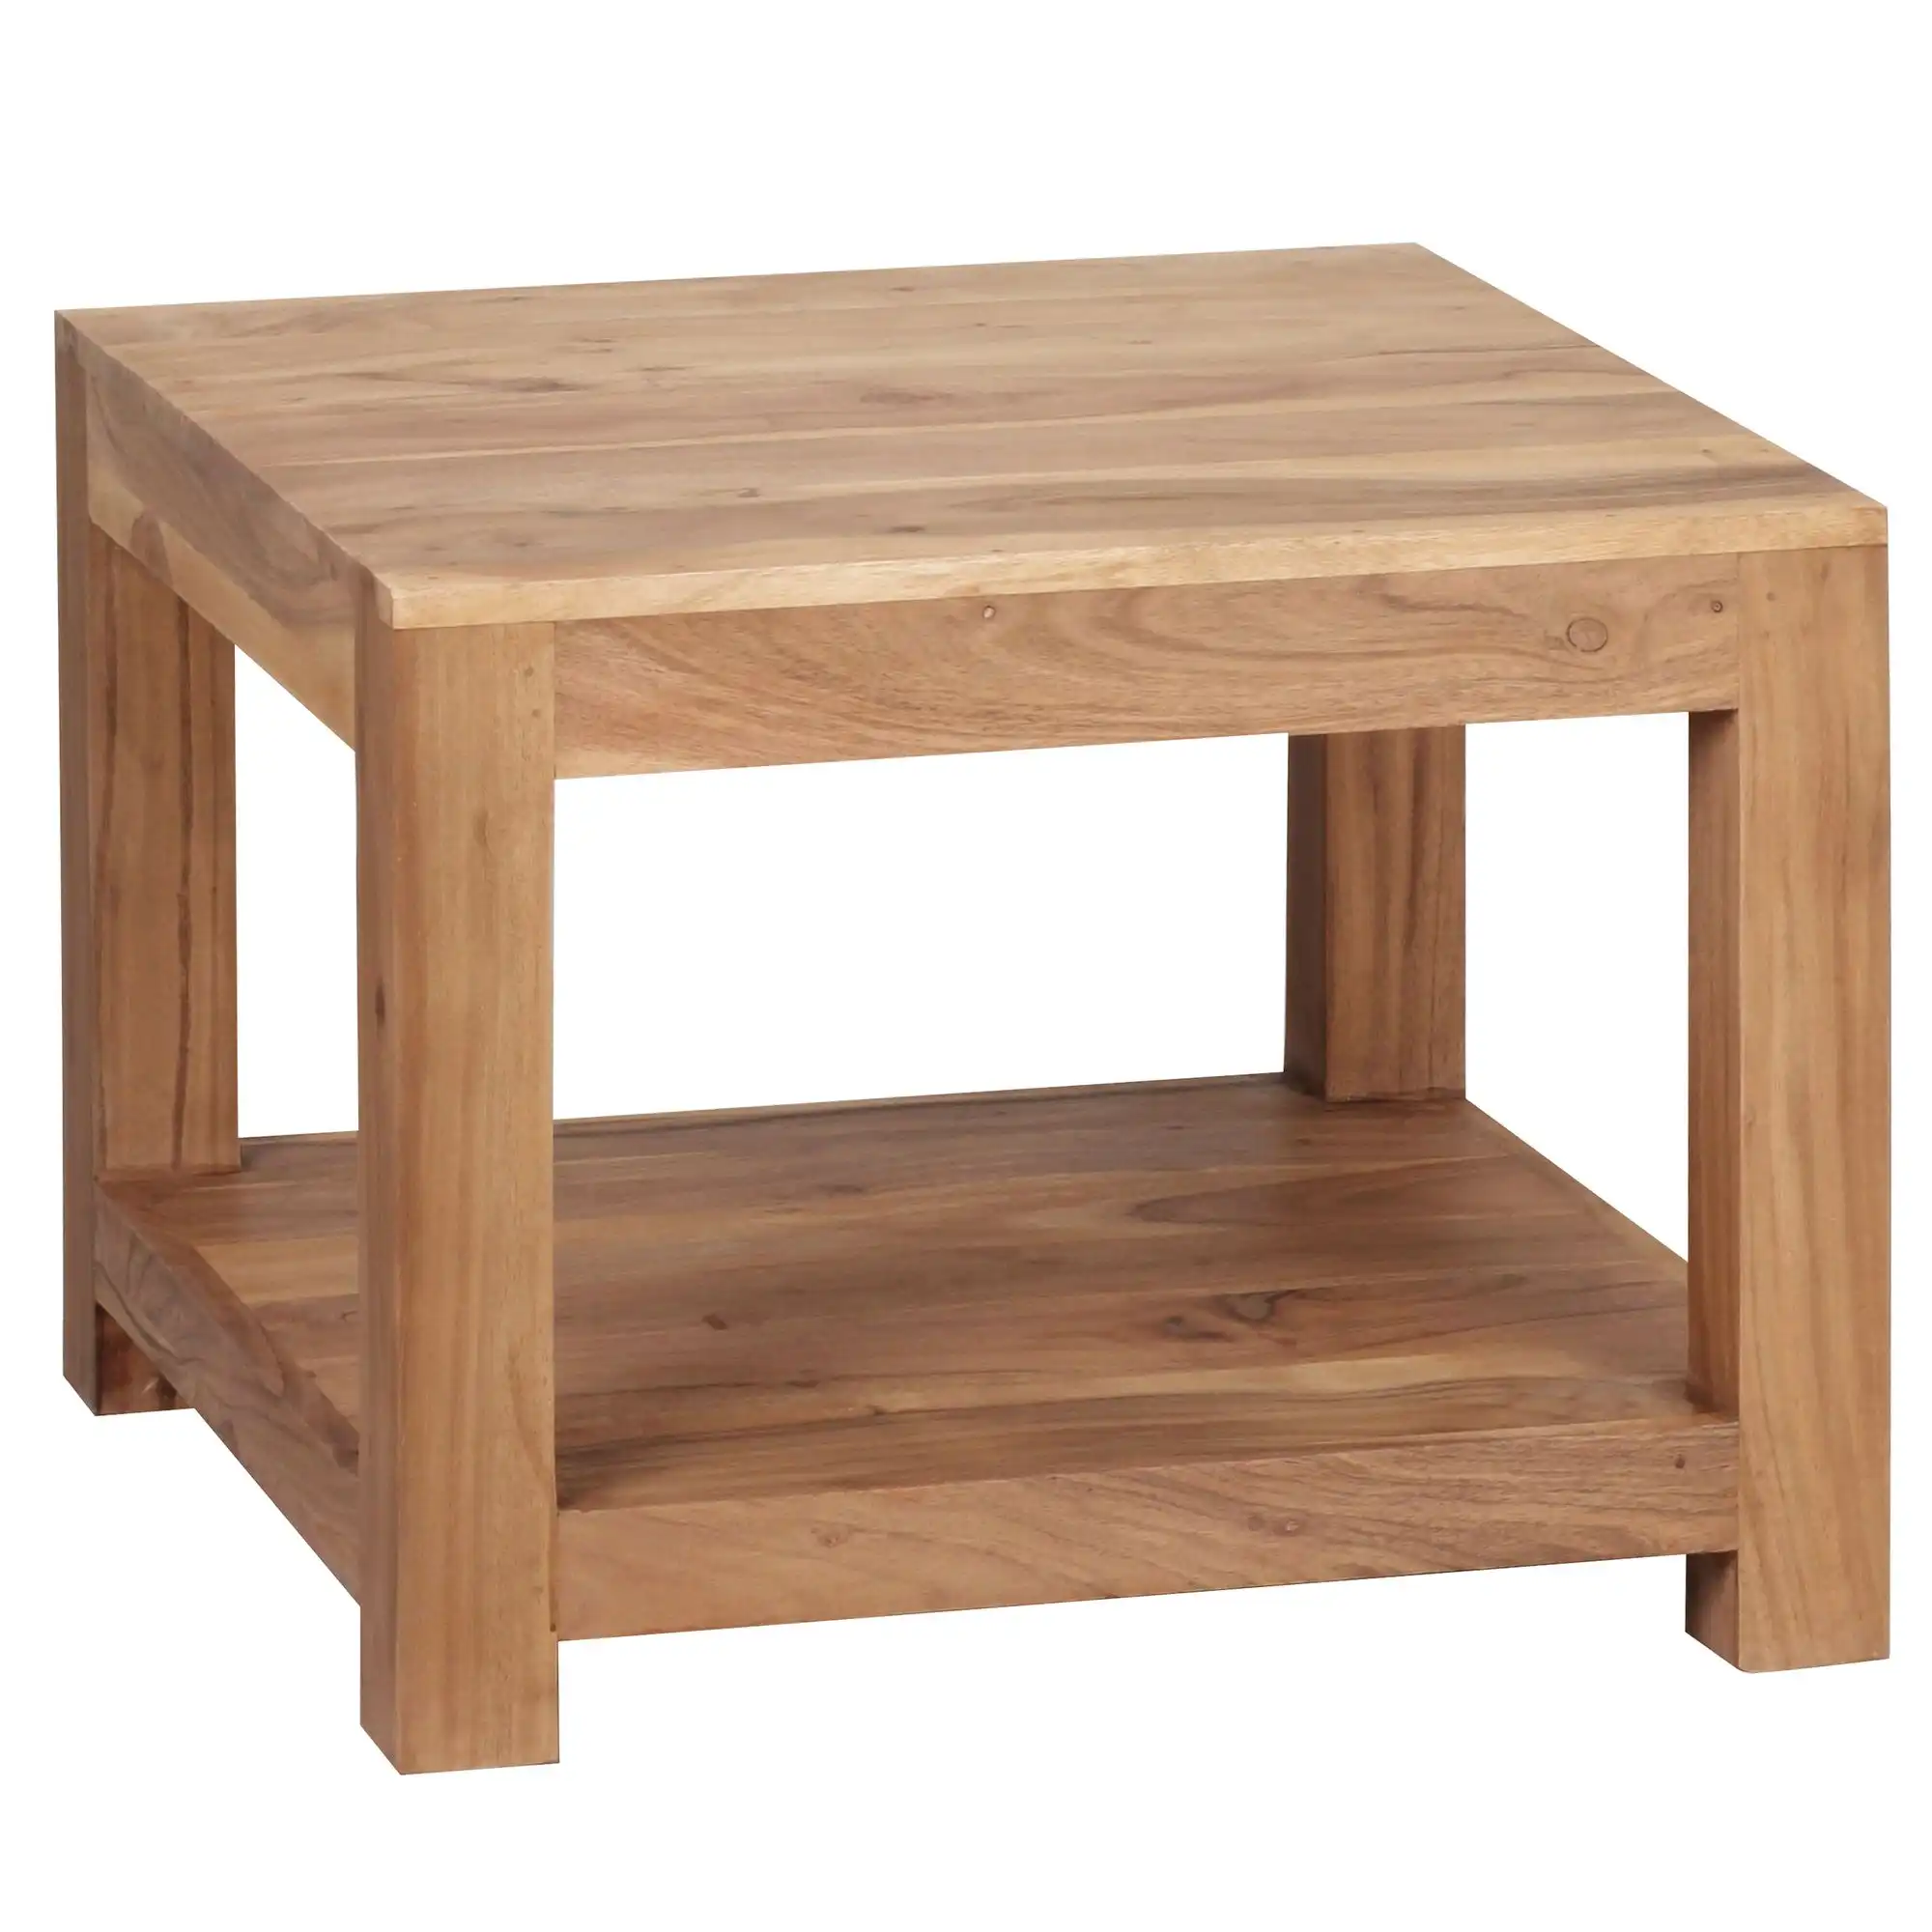 Wooden  2 Tier Coffee Table - popular handicrafts